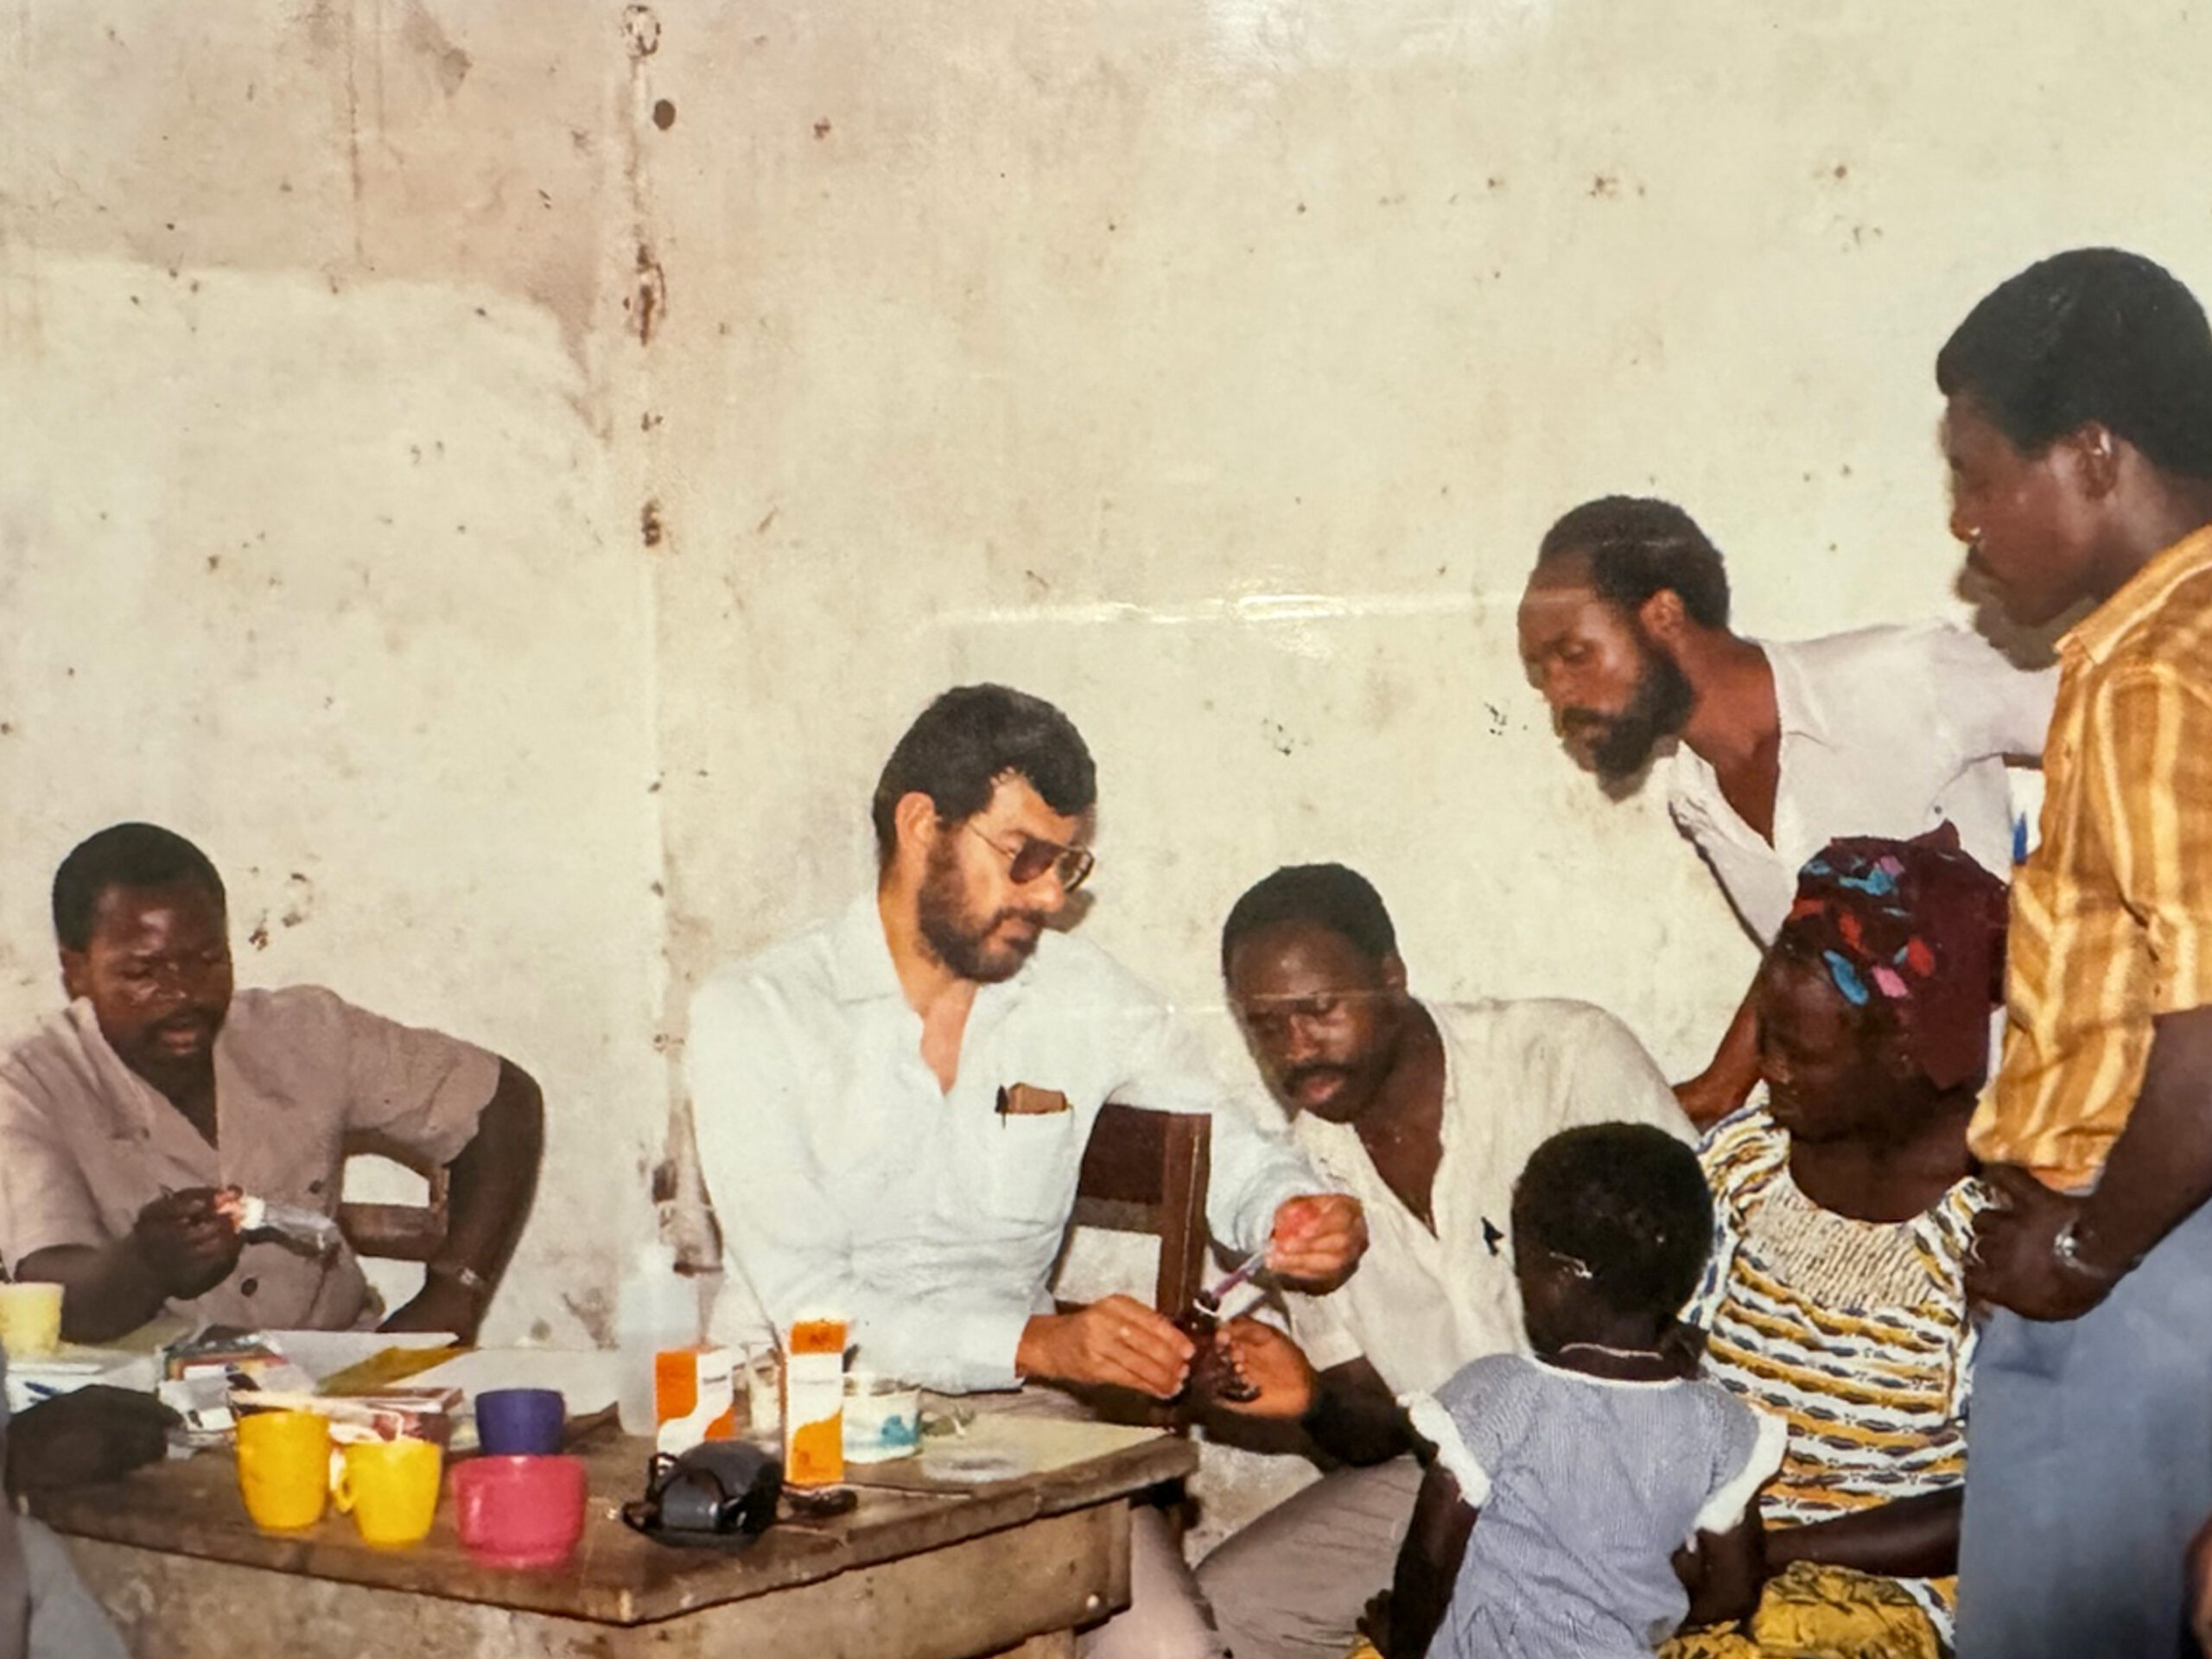 Remembering Joel Breman, Ebola pioneer and beloved global health mentor